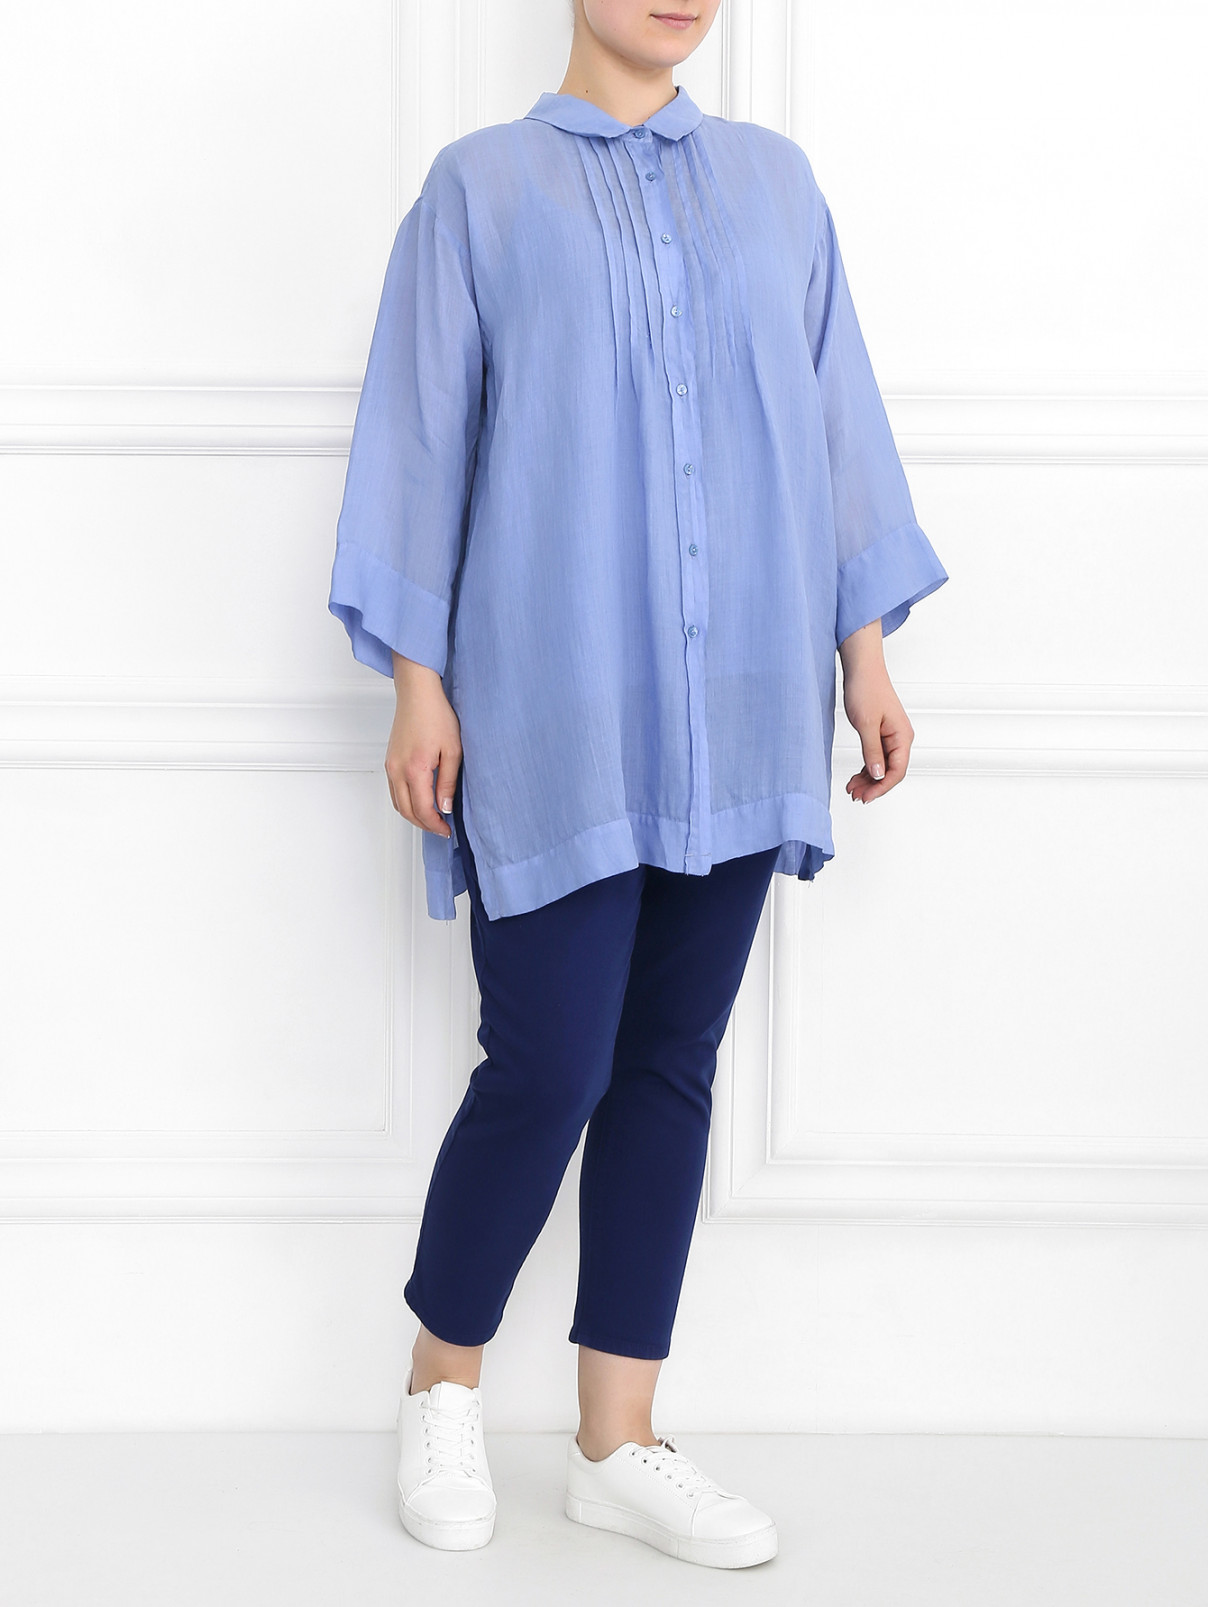 Удлиненная блуза с контрастной отделкой Voyage by Marina Rinaldi  –  Модель Общий вид  – Цвет:  Синий